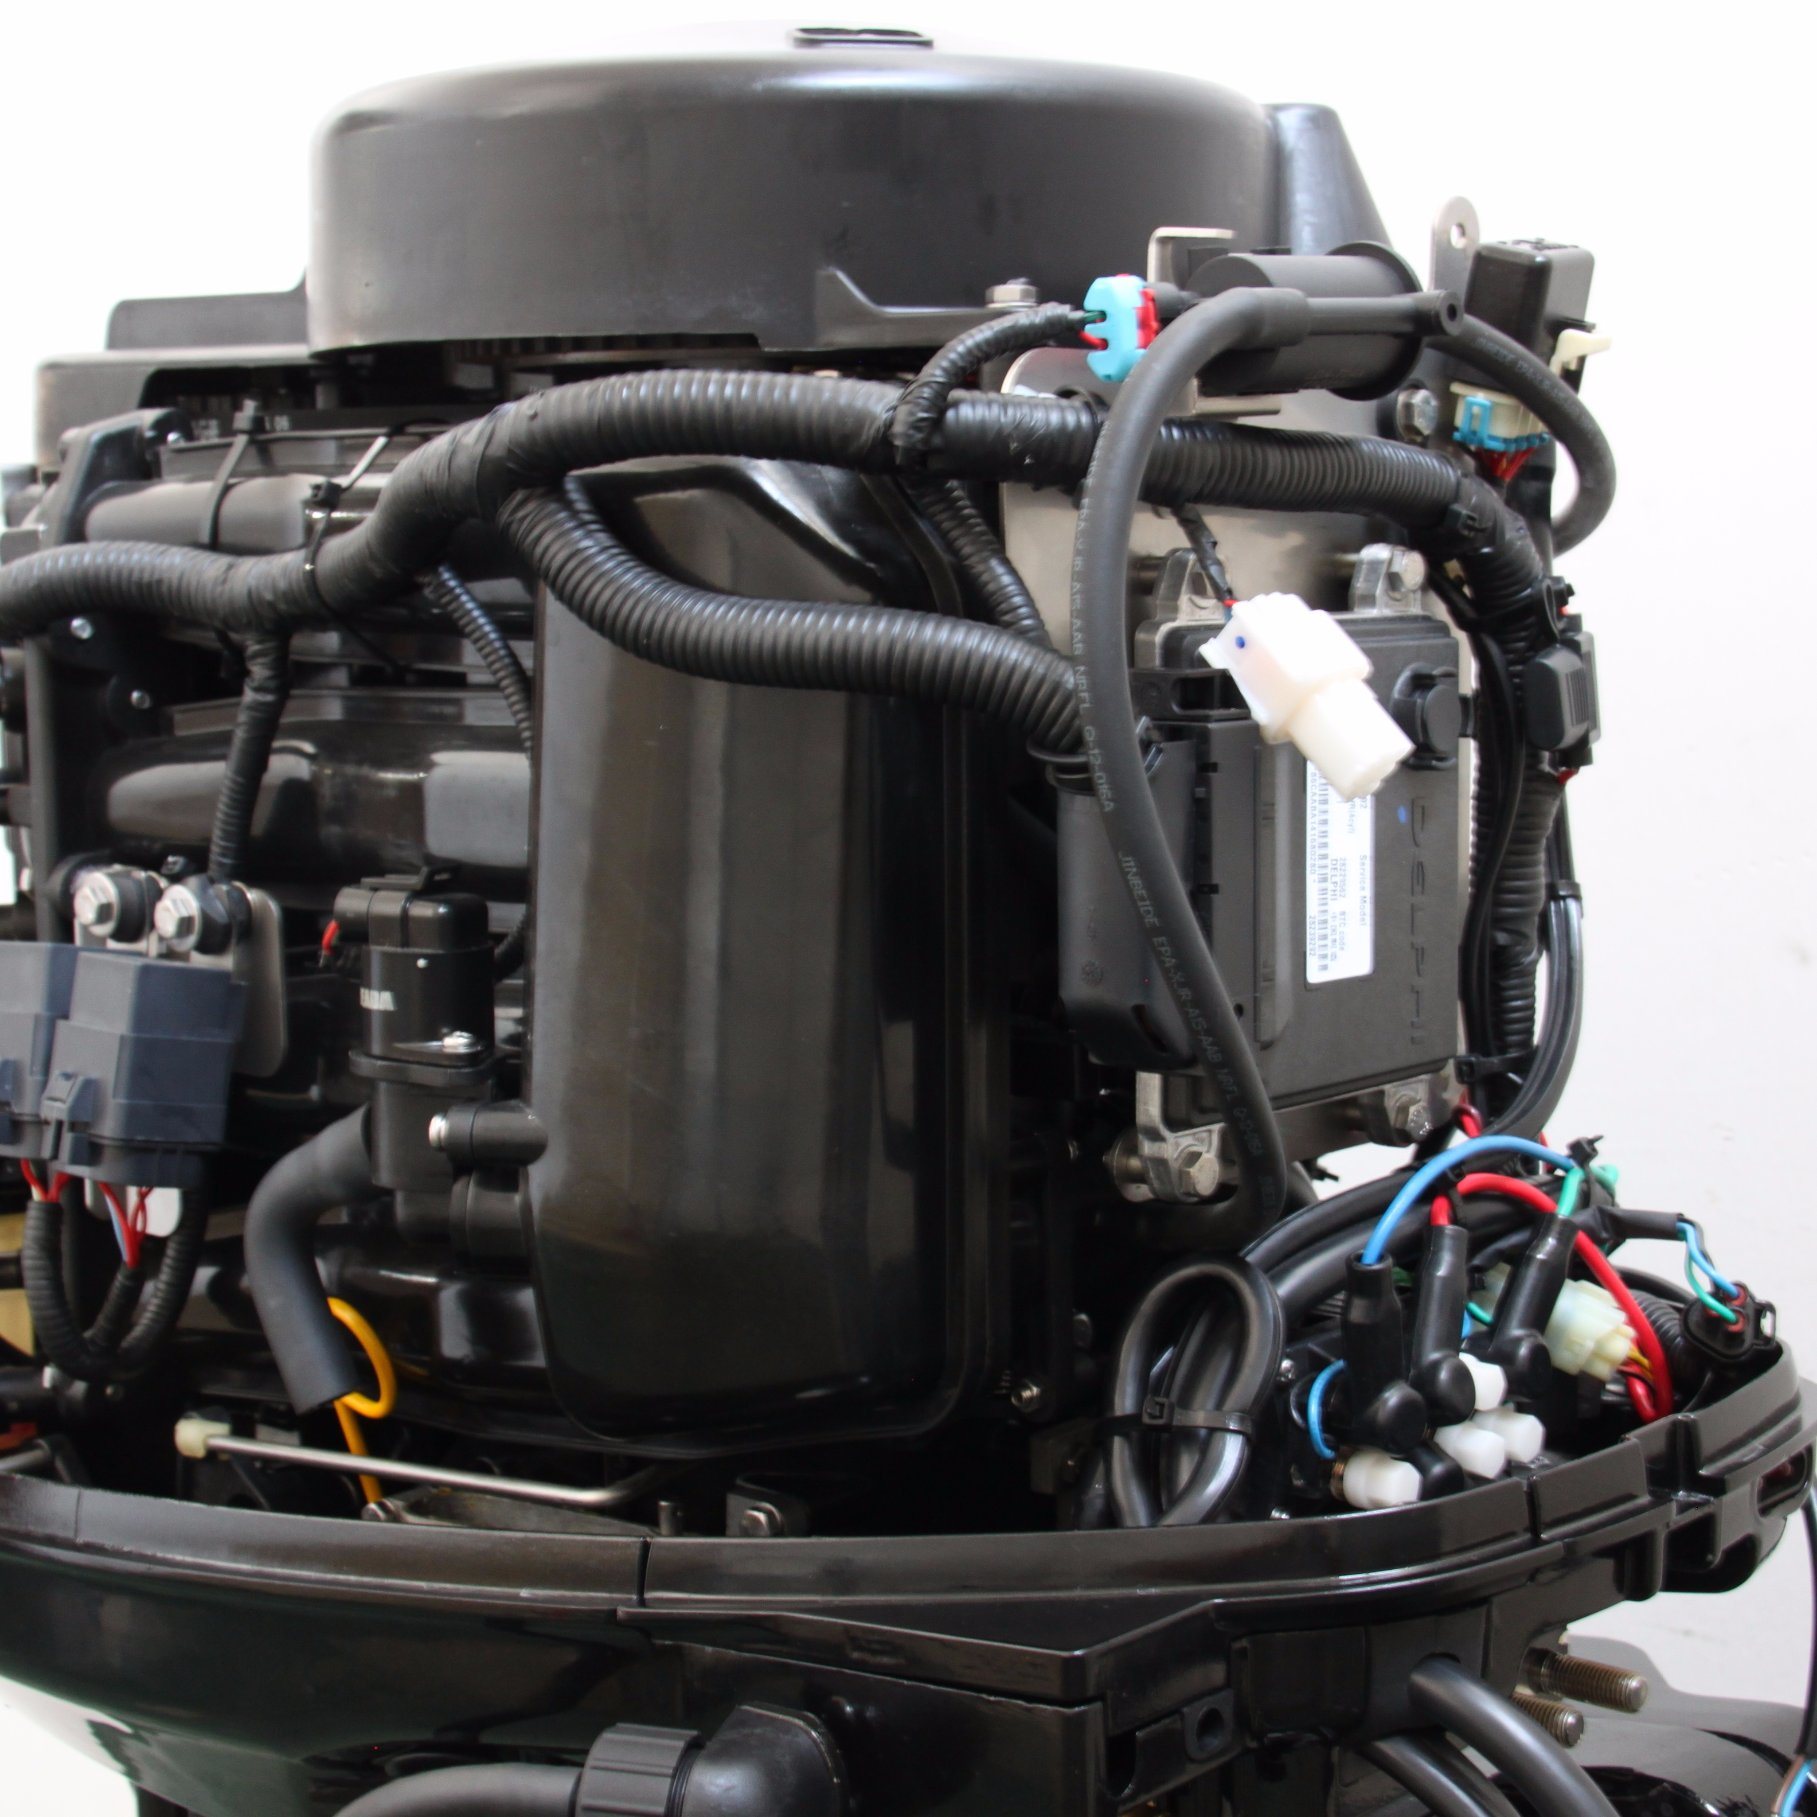 Лодочный мотор PROMAX SF60FEES-T EFI 